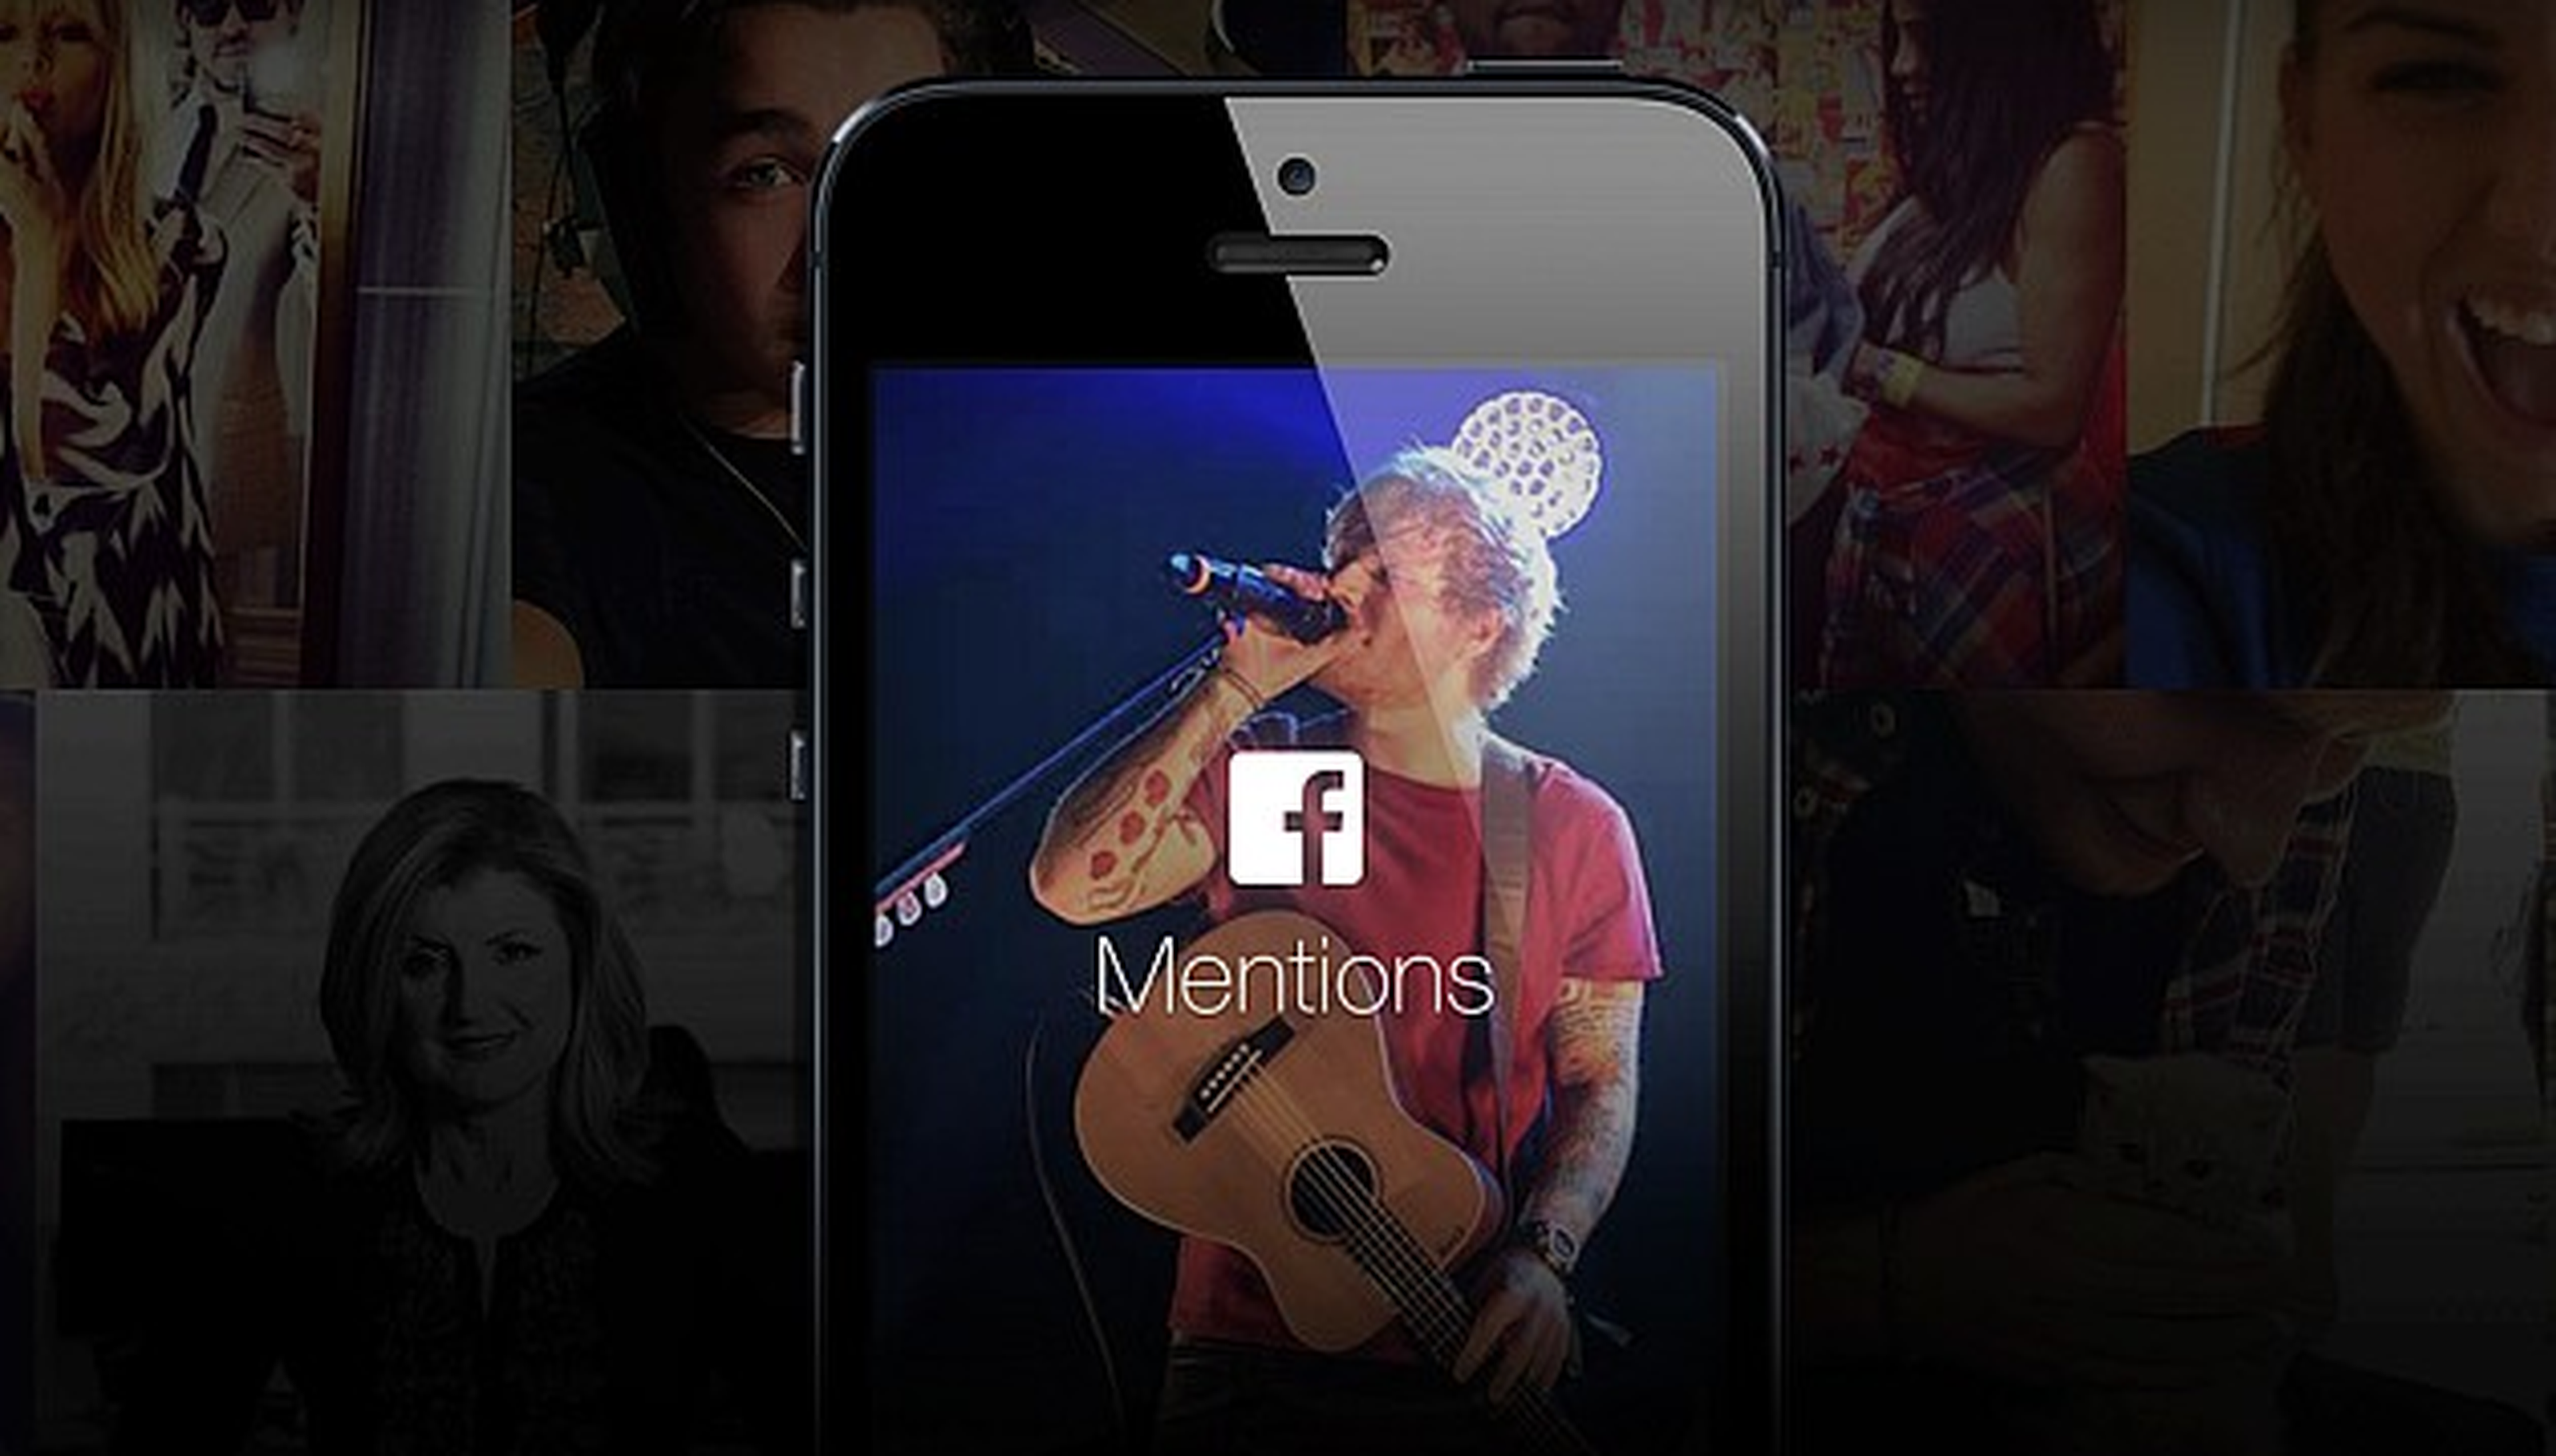 Llega Facebook Mentions, la red social para famosos